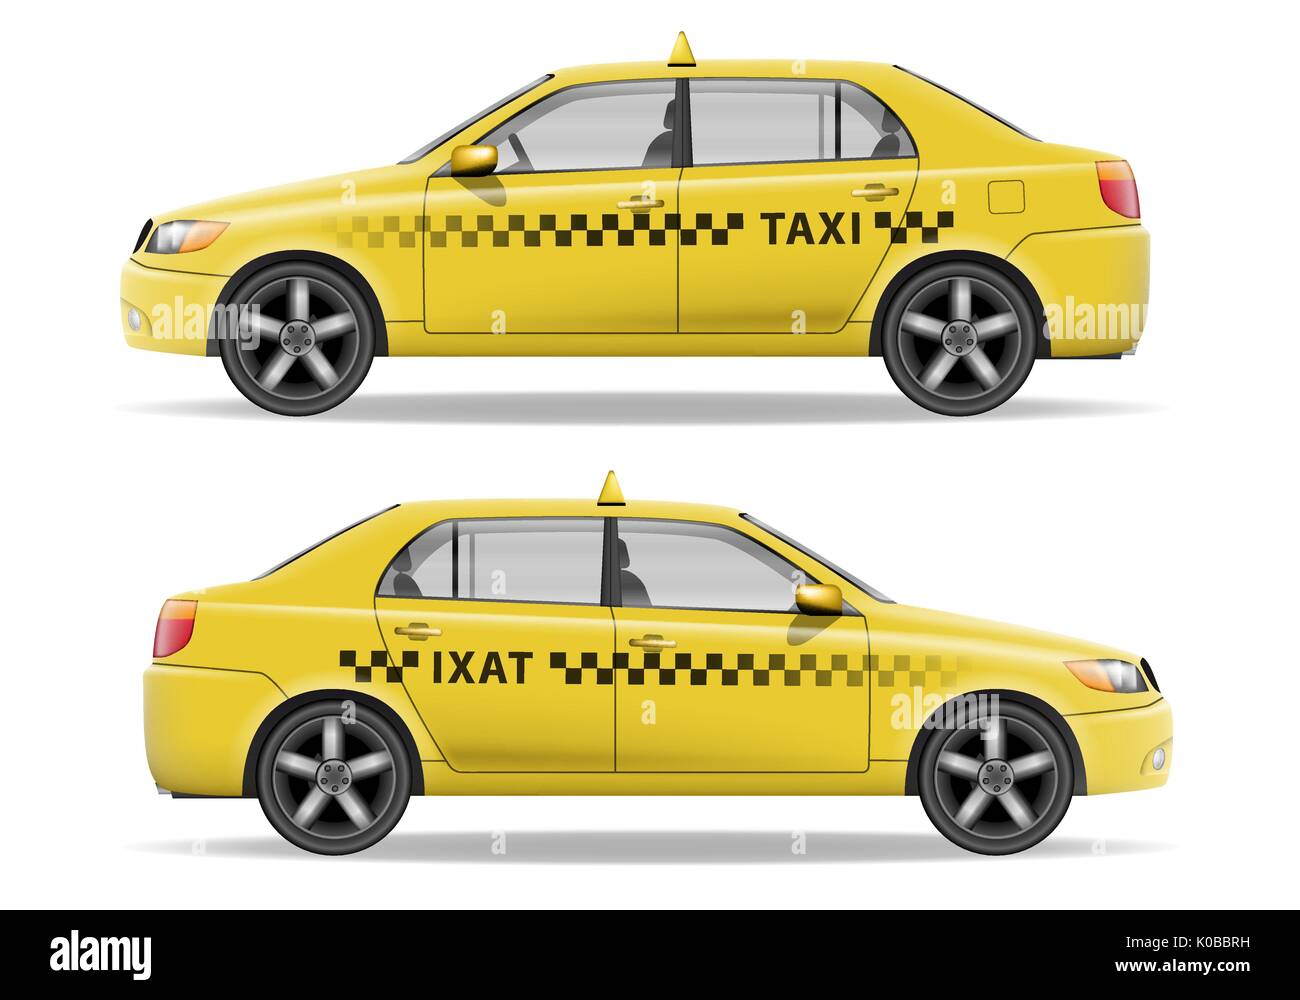 Vectores e ilustraciones de Taxi para descargar gratis